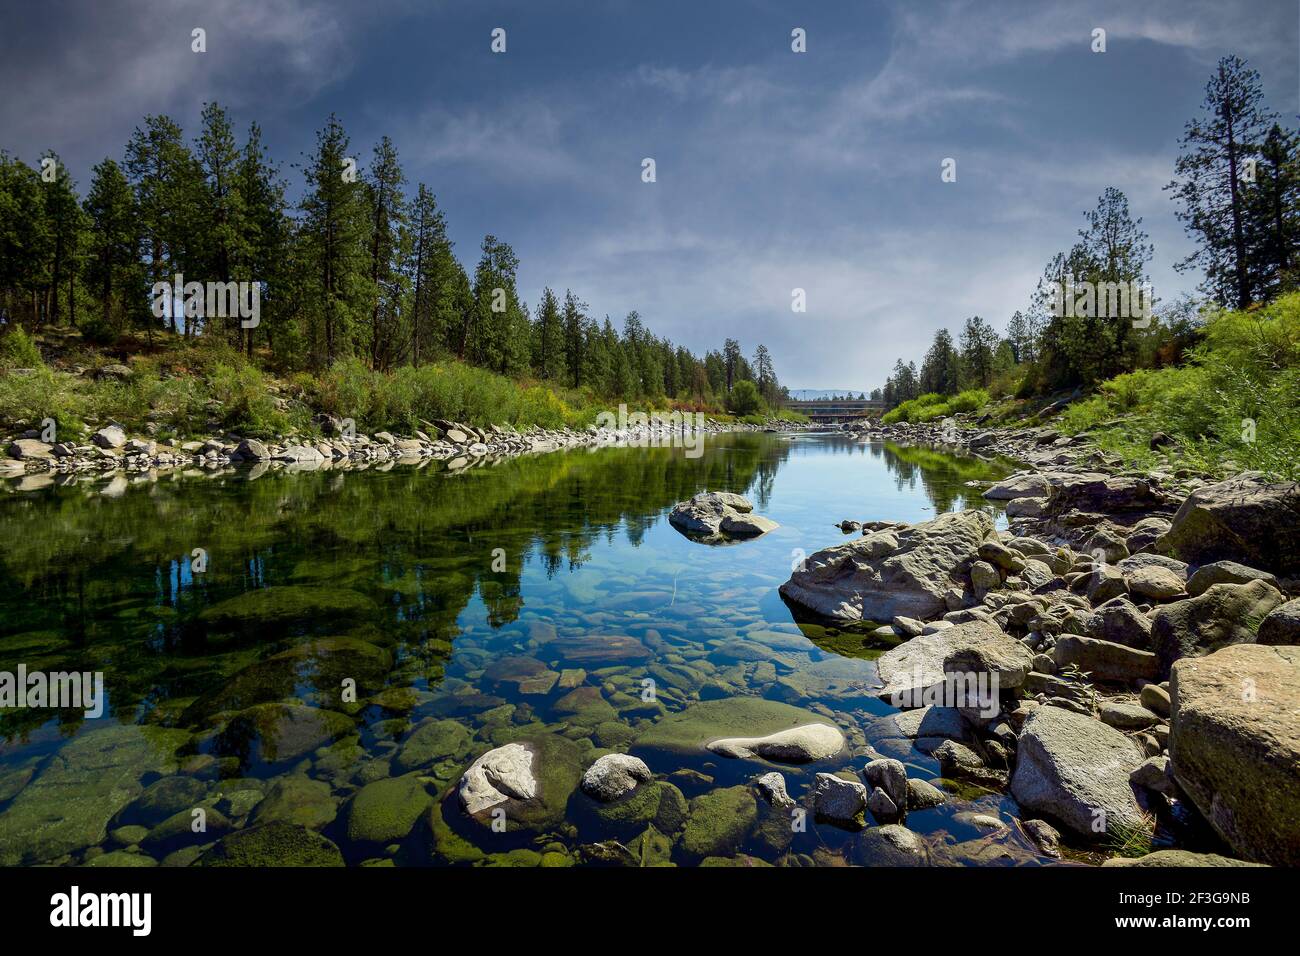 Fiume calmo con acqua trasparente che scorre vicino alberi di conifere verdi contro il cielo blu nuvoloso in campagna Foto Stock